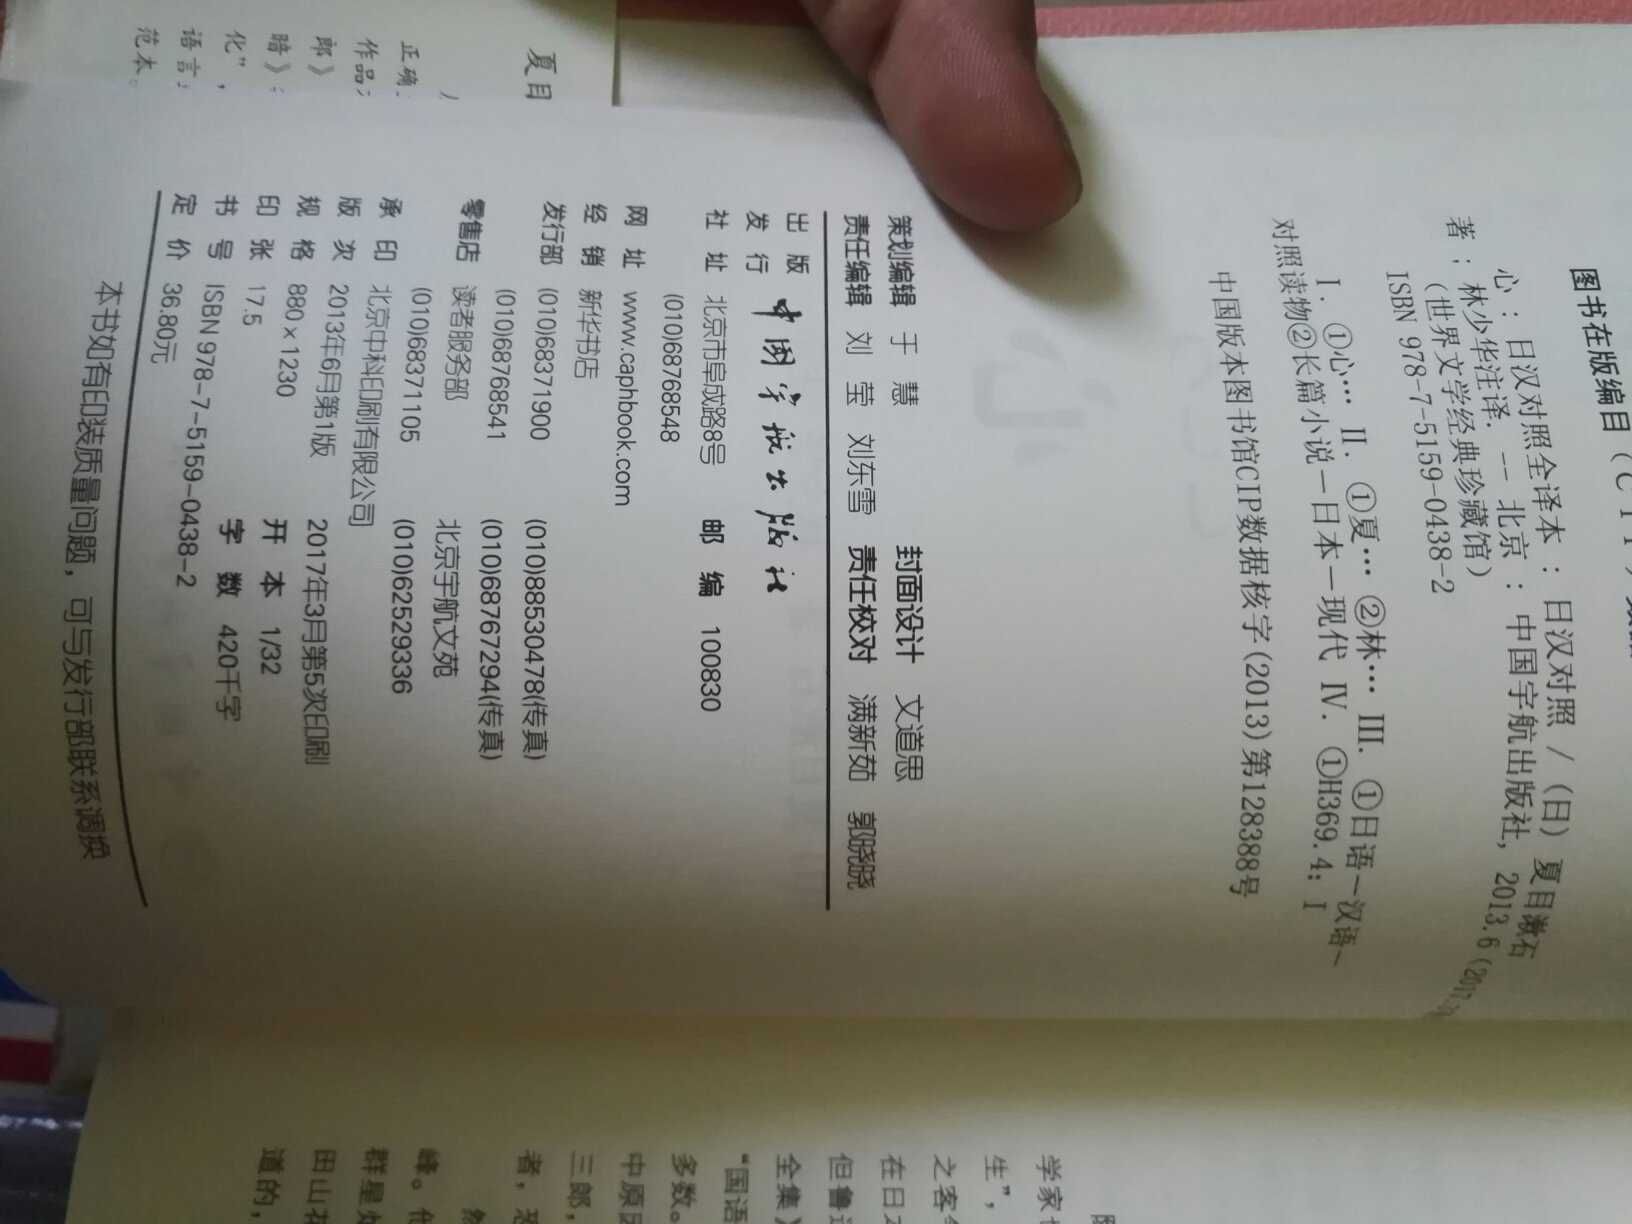 印刷清晰，有的词底部有注解，尽管日语水平一般但夏目漱石先生的作品还是挺喜欢的